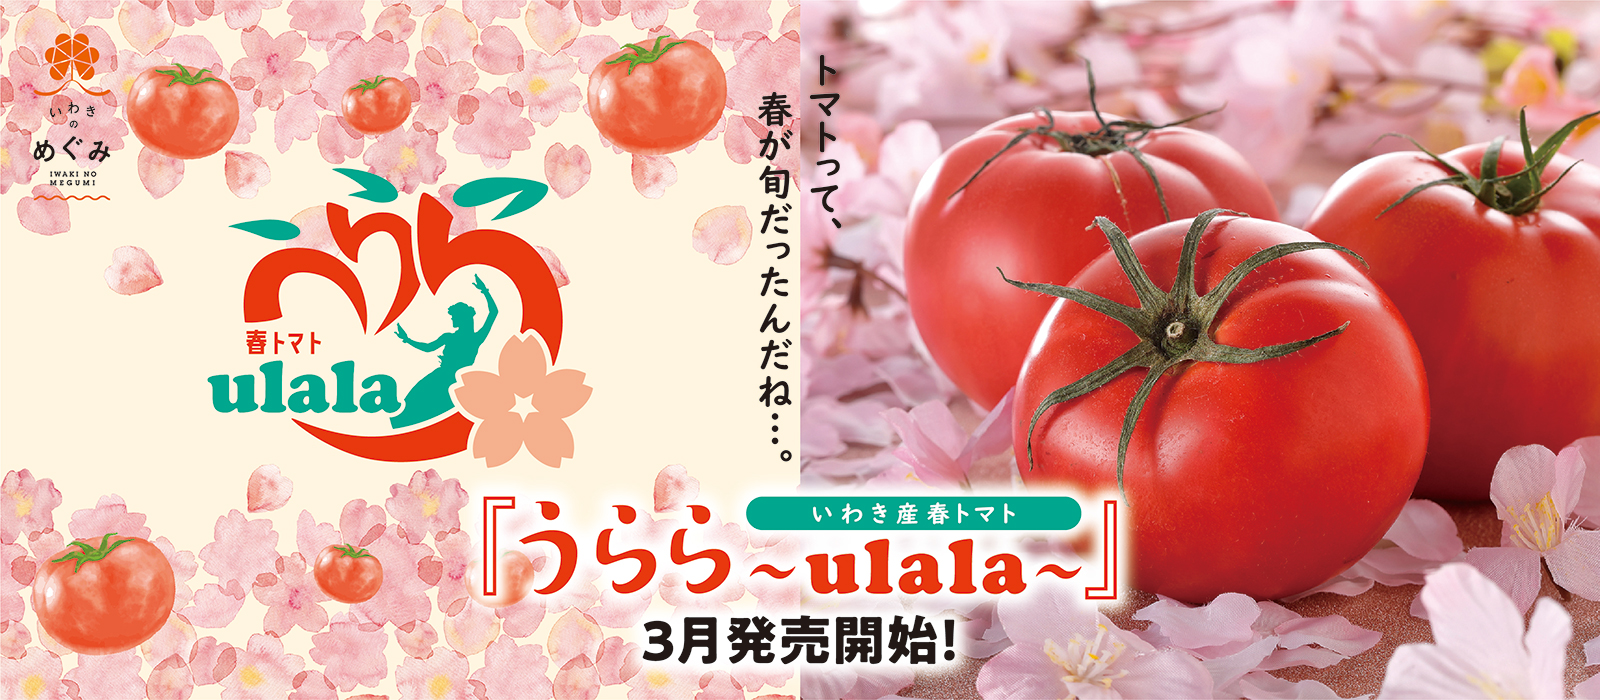 春トマト「うらら〜ulala〜」